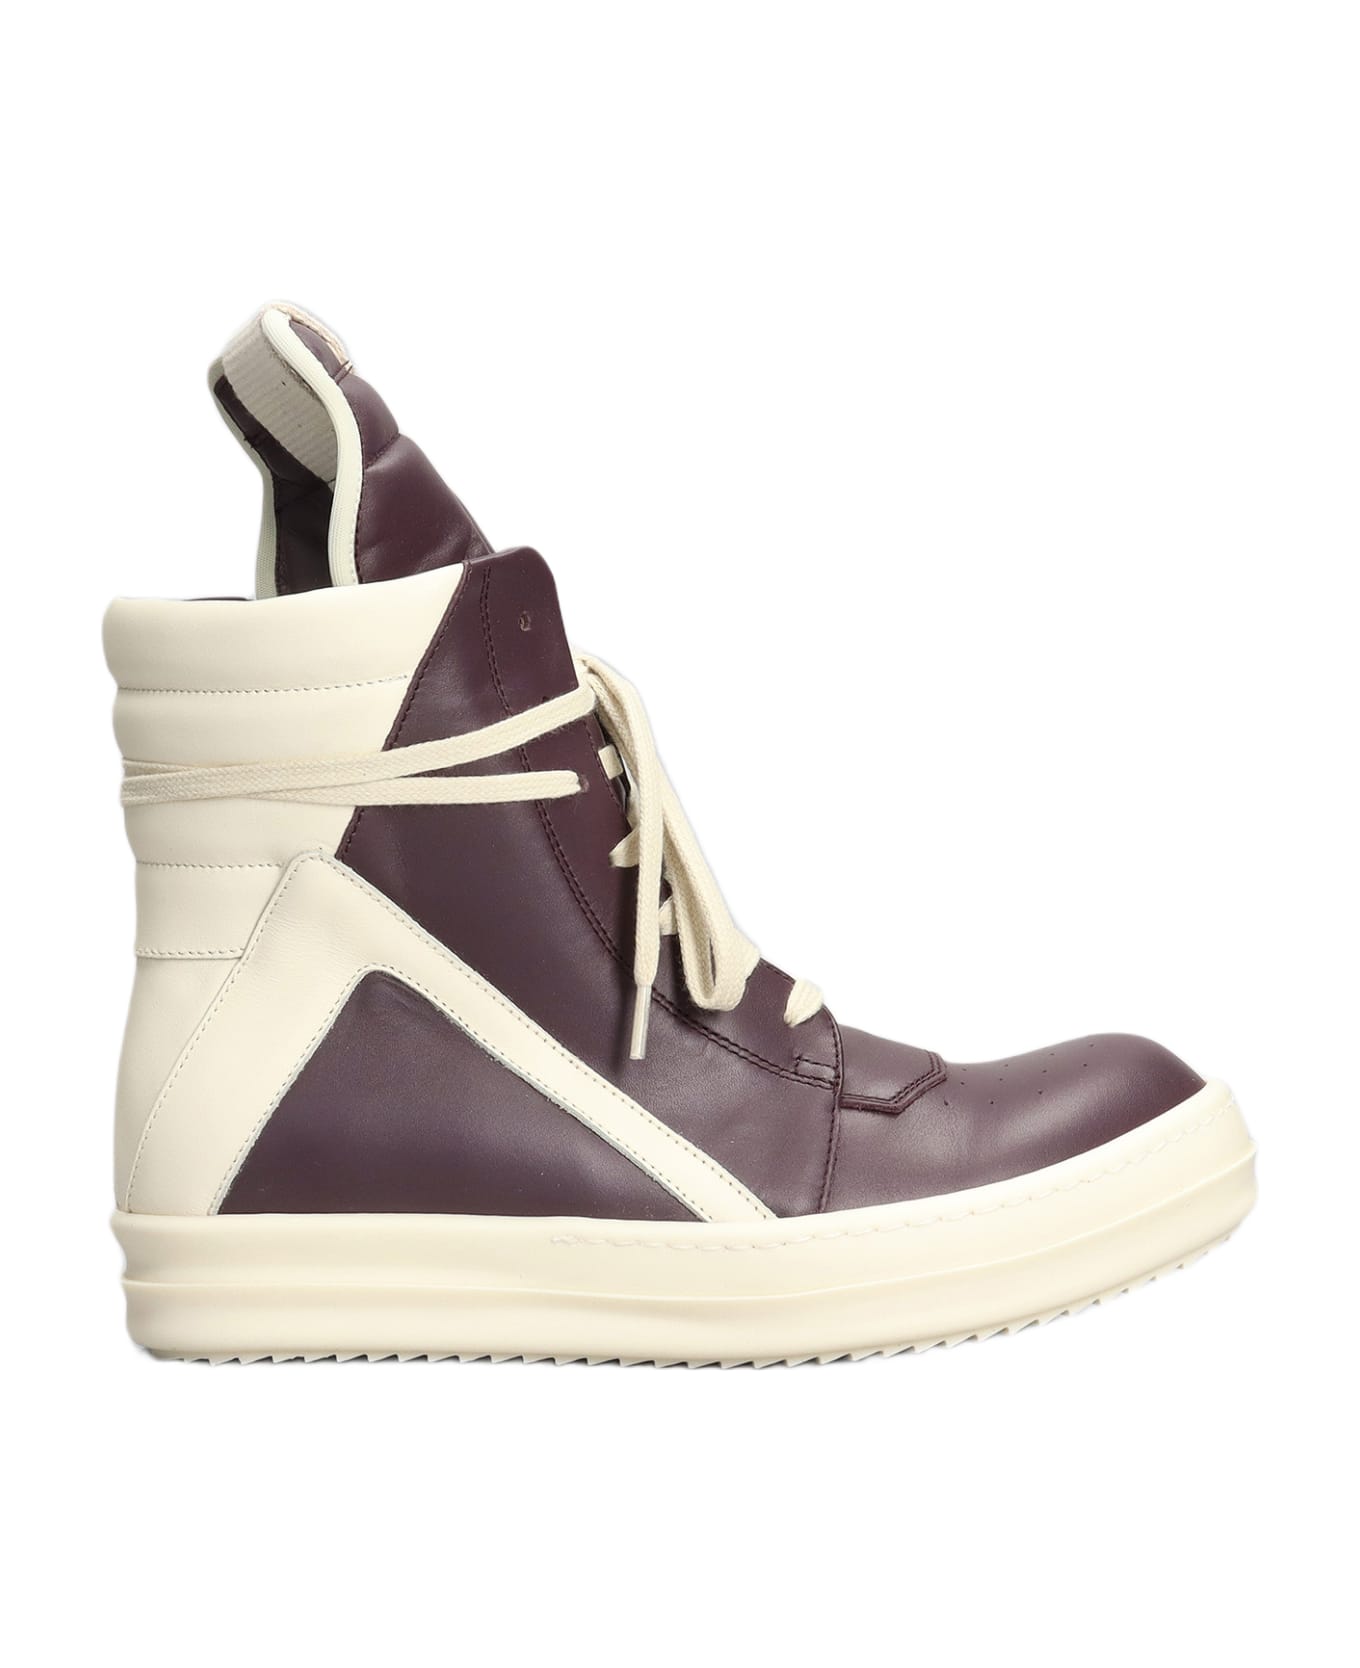 Rick Owens Geobasket Sneakers In Viola Leather - Viola